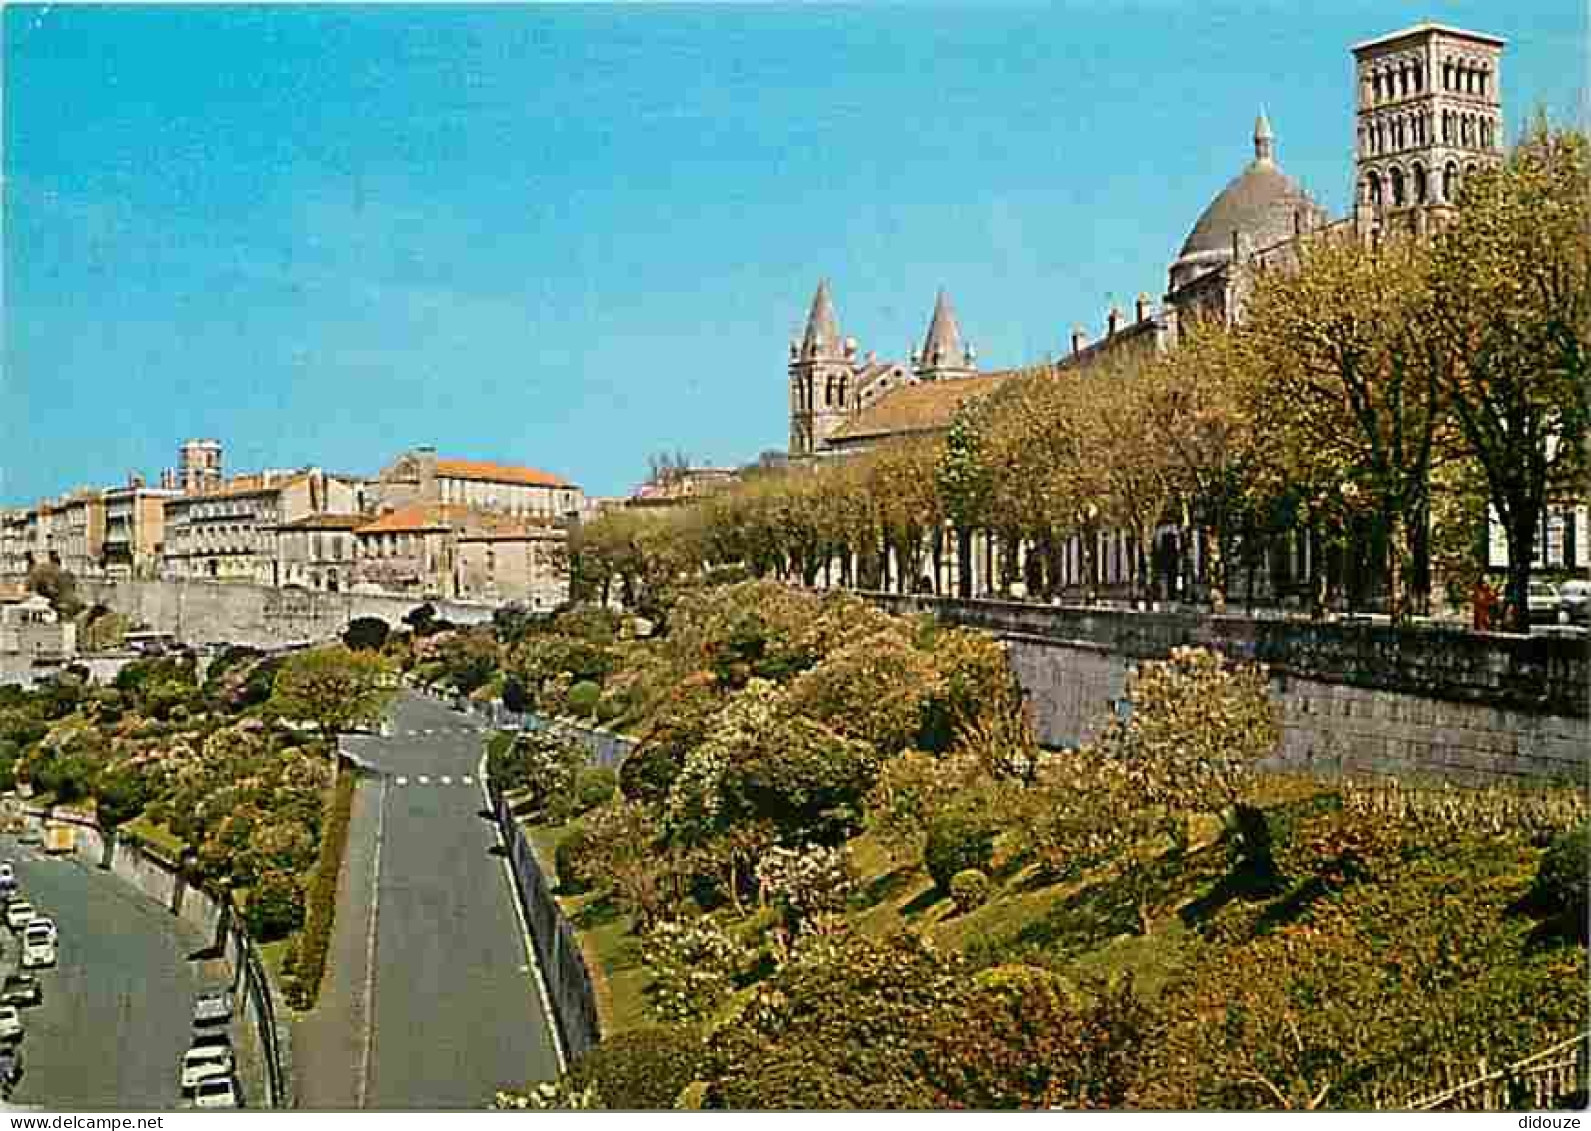 16 - Angouleme - Les Jardins En Terrasse Au Pied Des Remparts - La Cathédrale Saint-Pierre - Flamme Postale De Angouleme - Angouleme